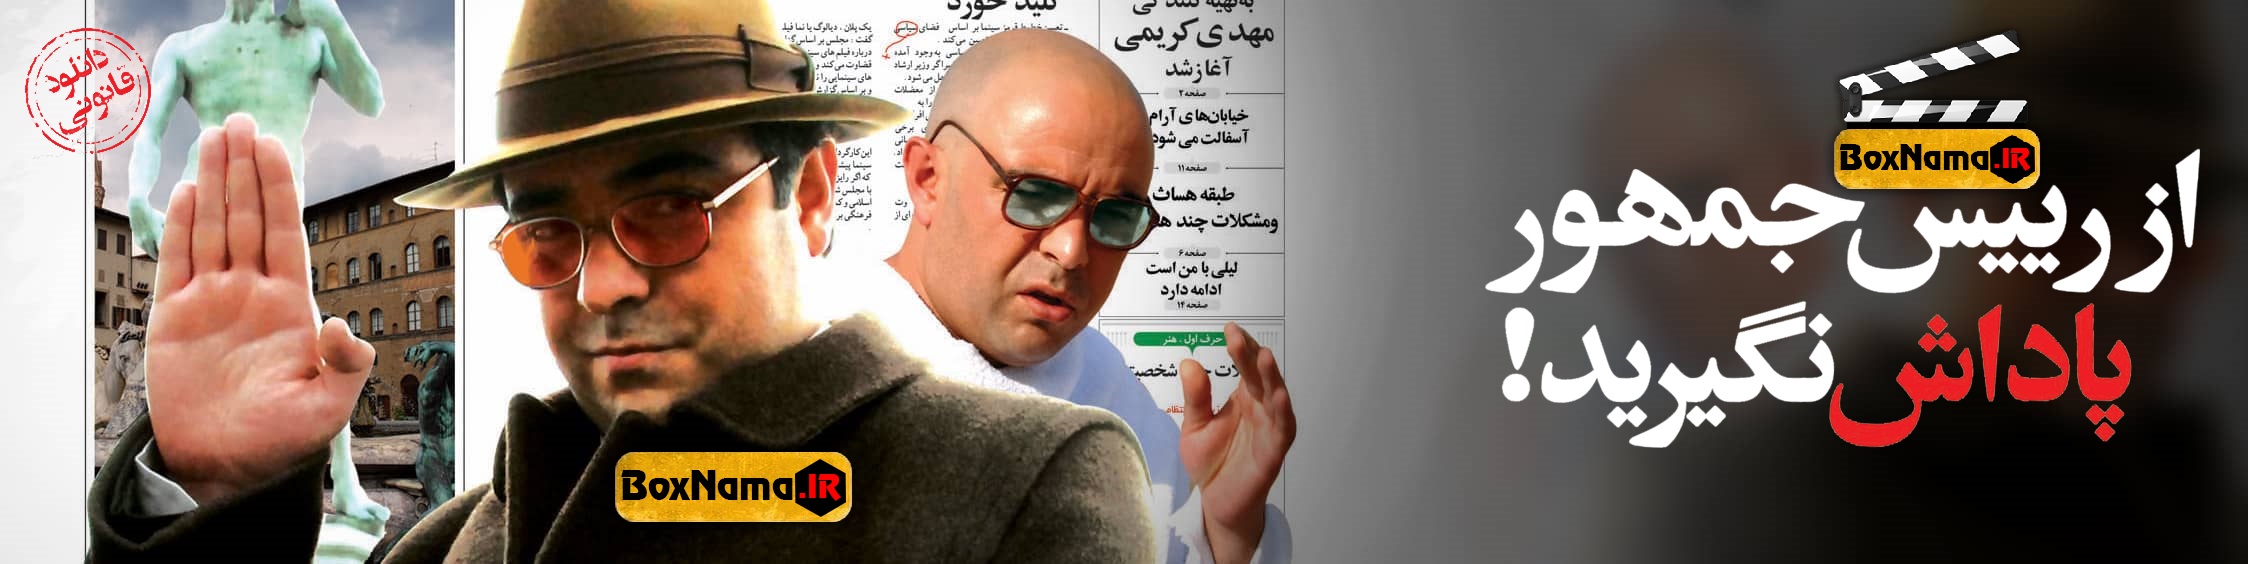 دانلود فیلم کمدی ایرانی از رئیس جمهور پاداش نگیرید